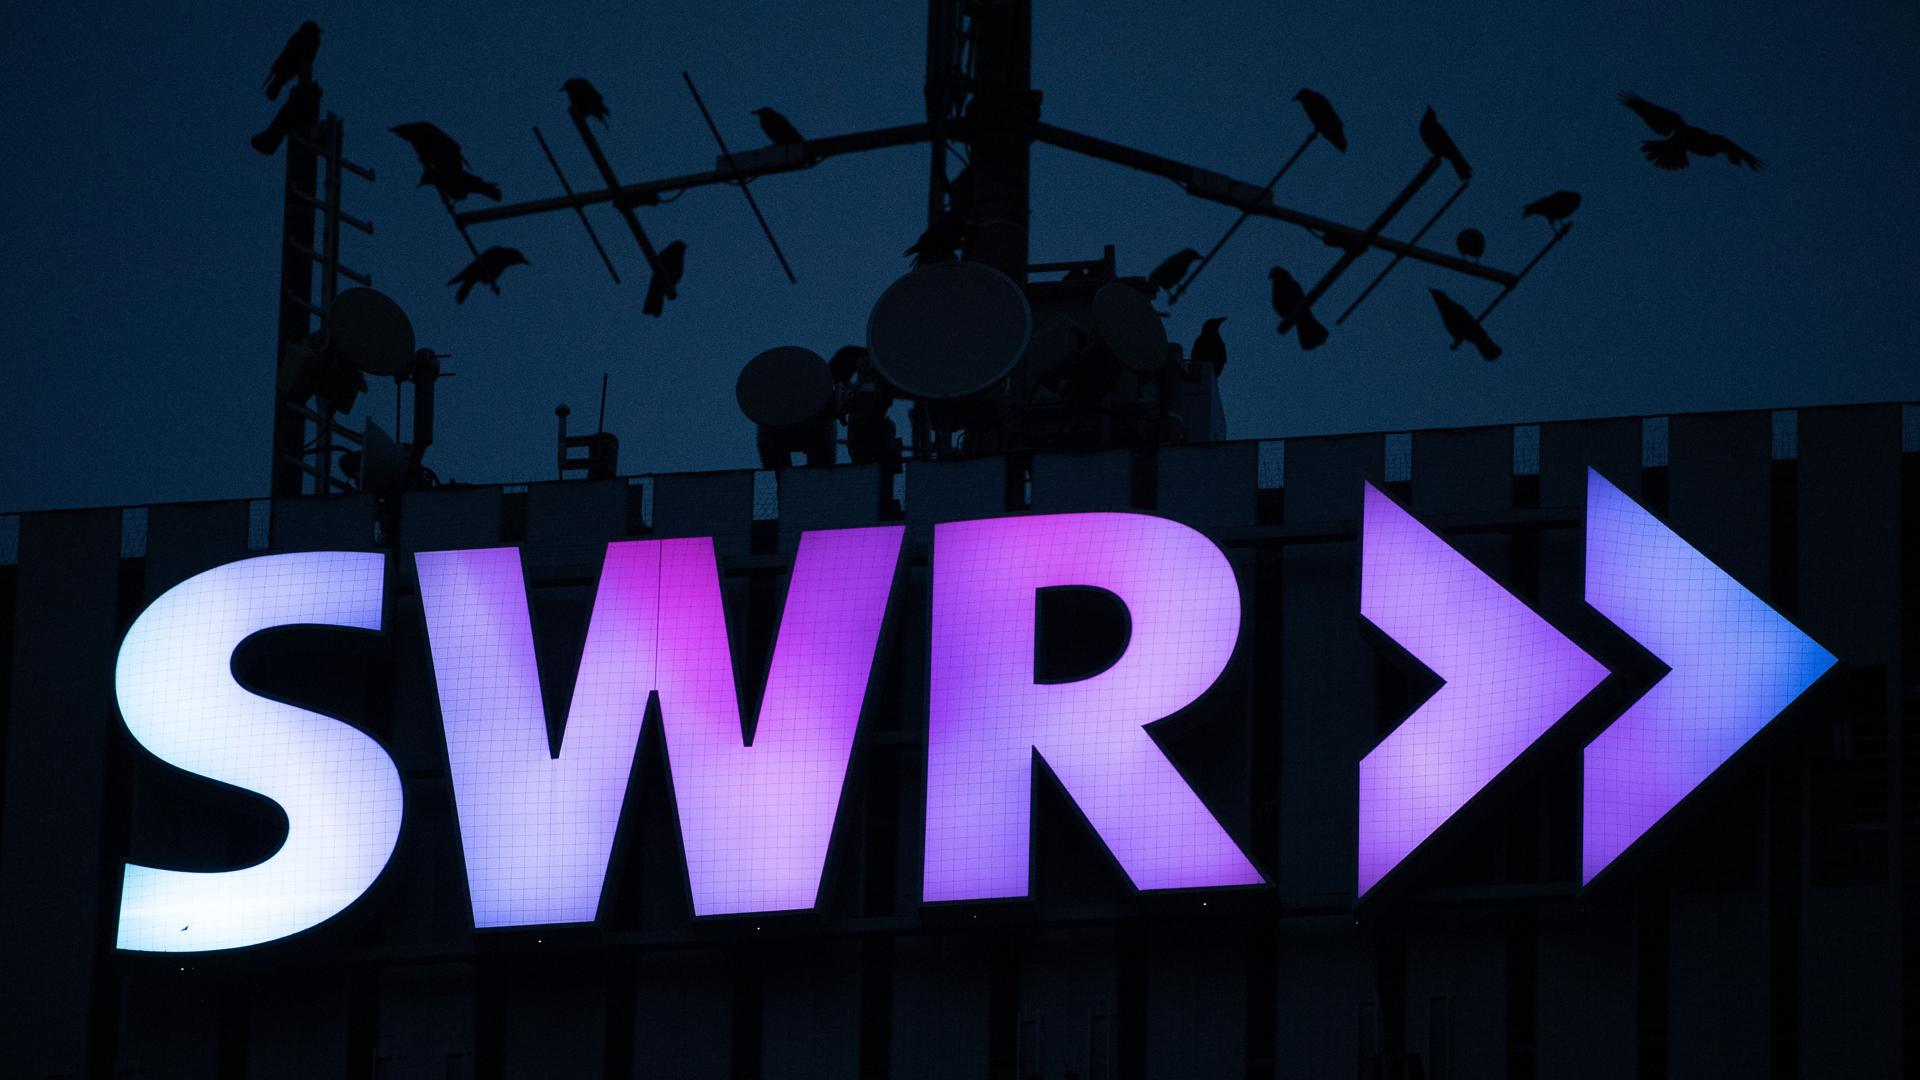 Das Logo des Südwestrundfunks (SWR) leuchtet am frühen Morgen am Funkhaus, während Vögel auf den Antennen am Dach sitzen. 